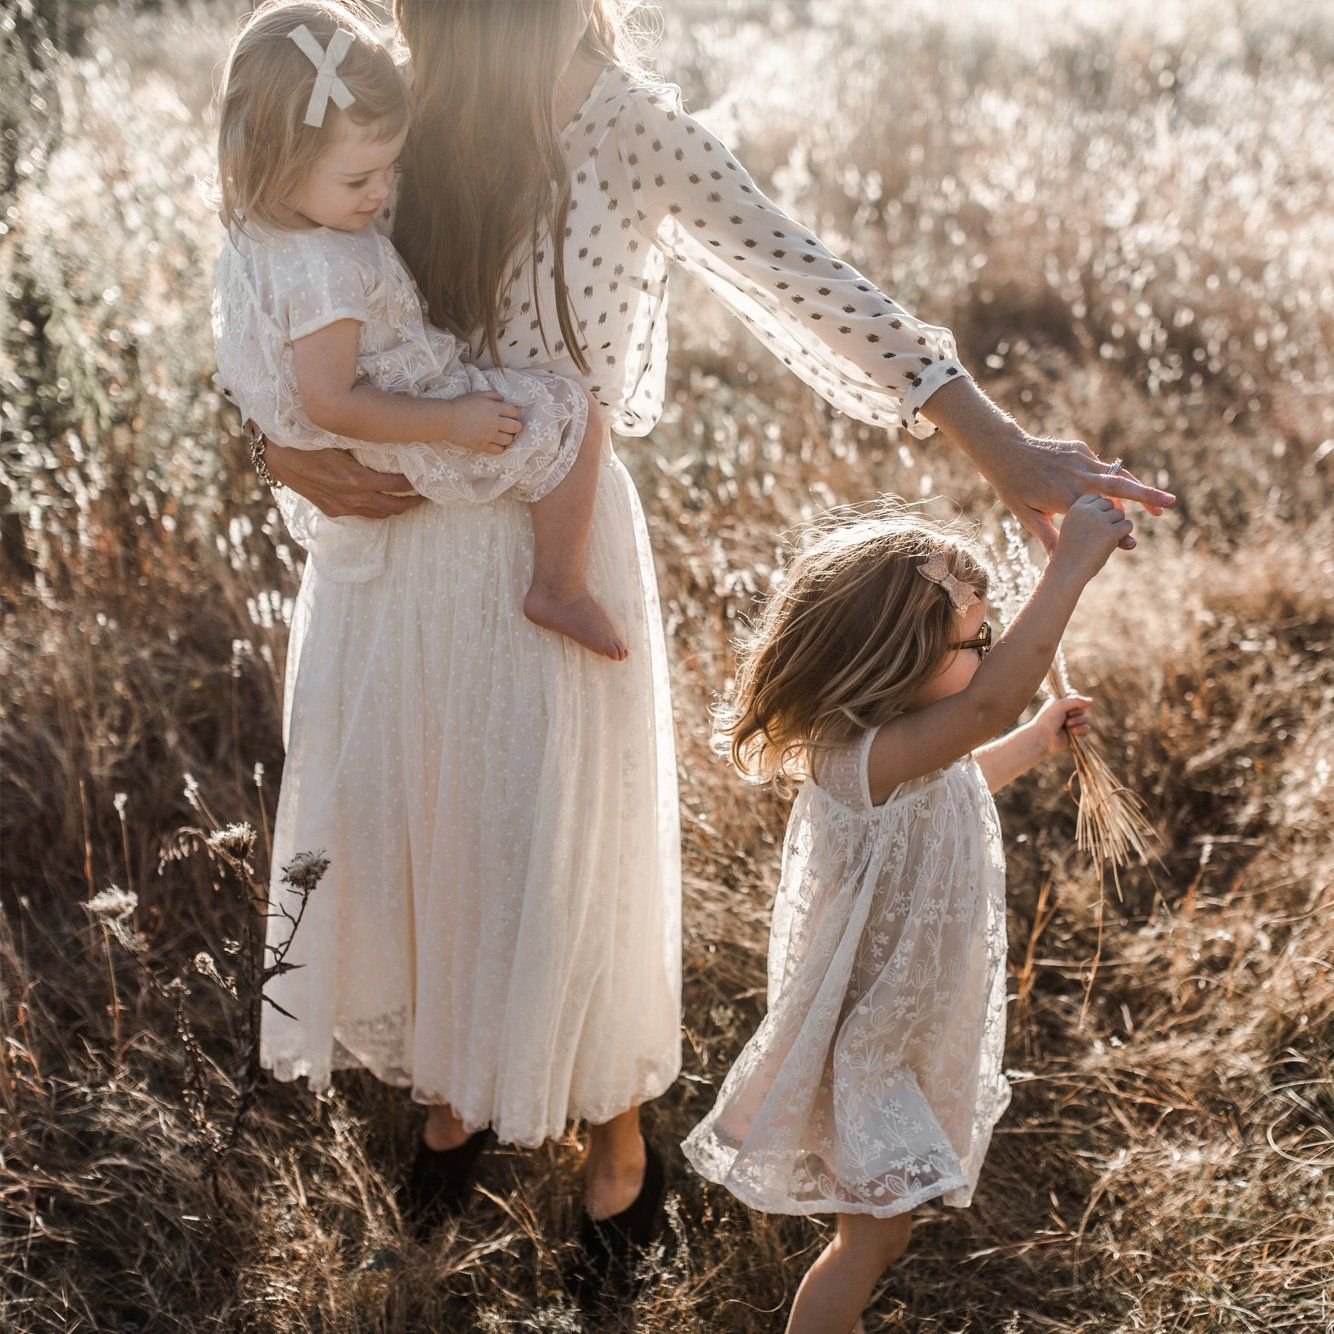 Мамашу двое. Мама и дочка. Фотосессия мама и дочь. Фотосессия с двумя дочками. Мама с двумя девочками.